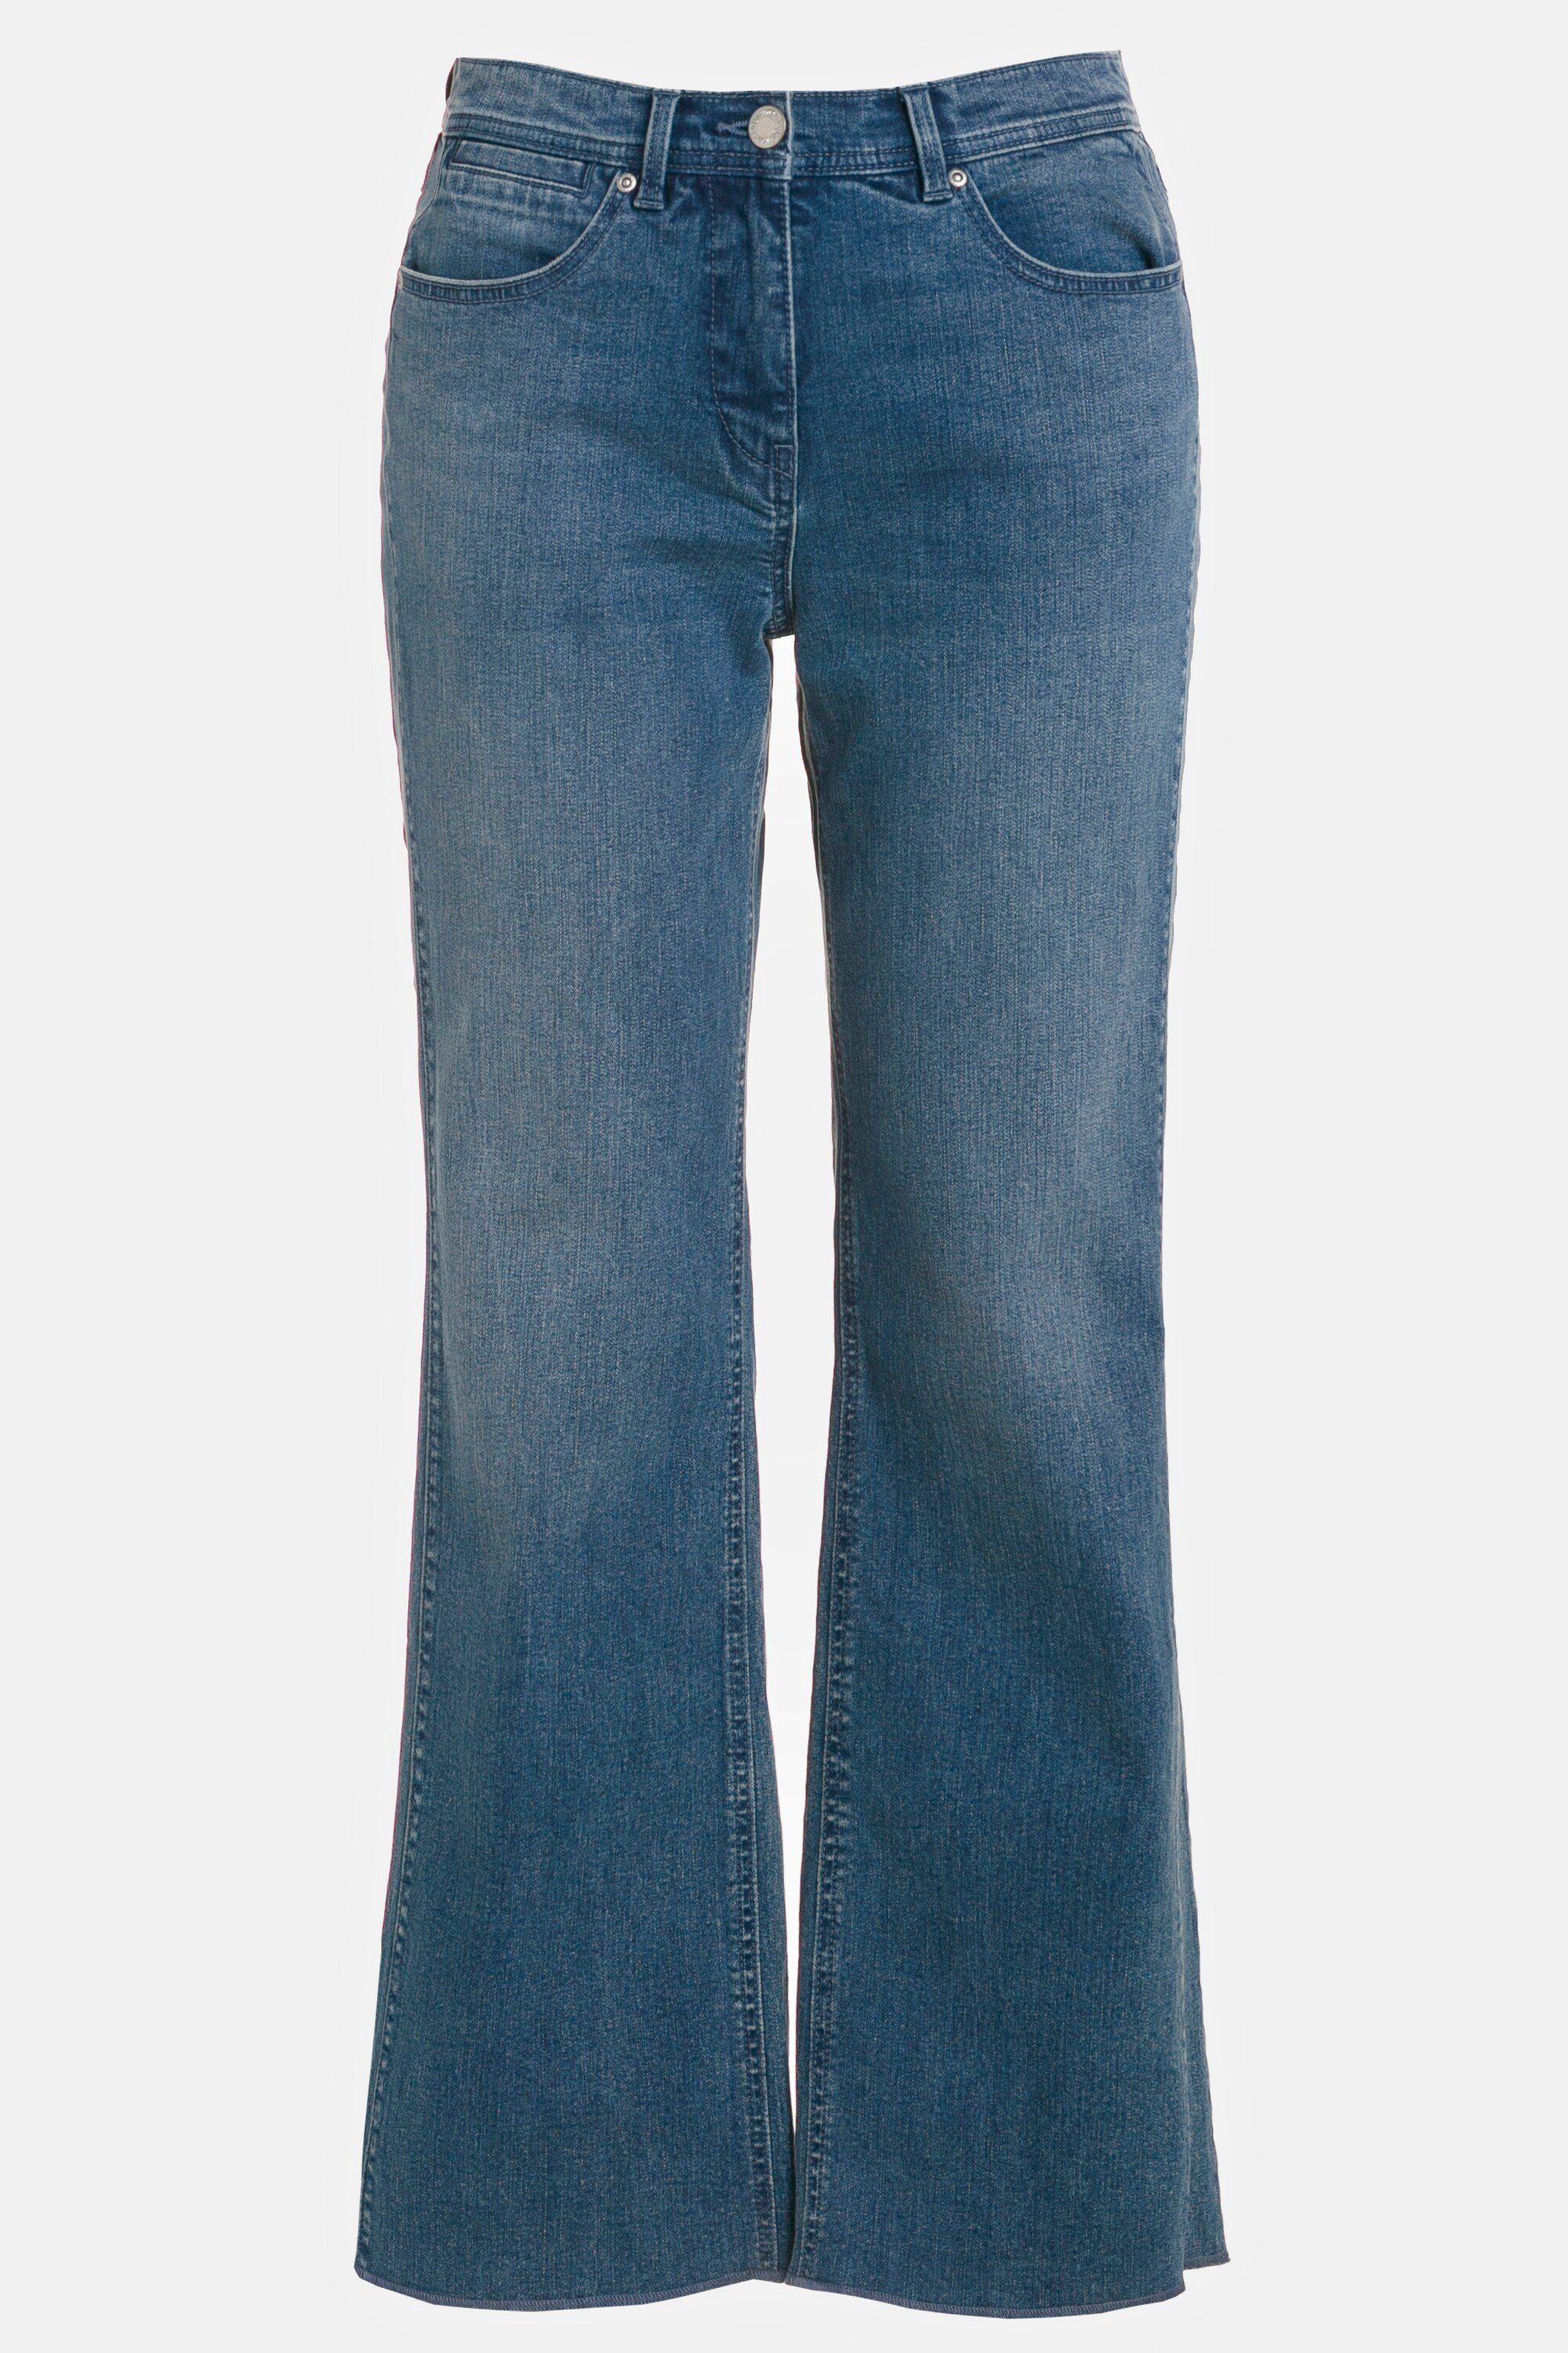 Mary 5-Pocket-Form Stretch-Hose ausgestelltes Bein Ulla Jeans weites Popken